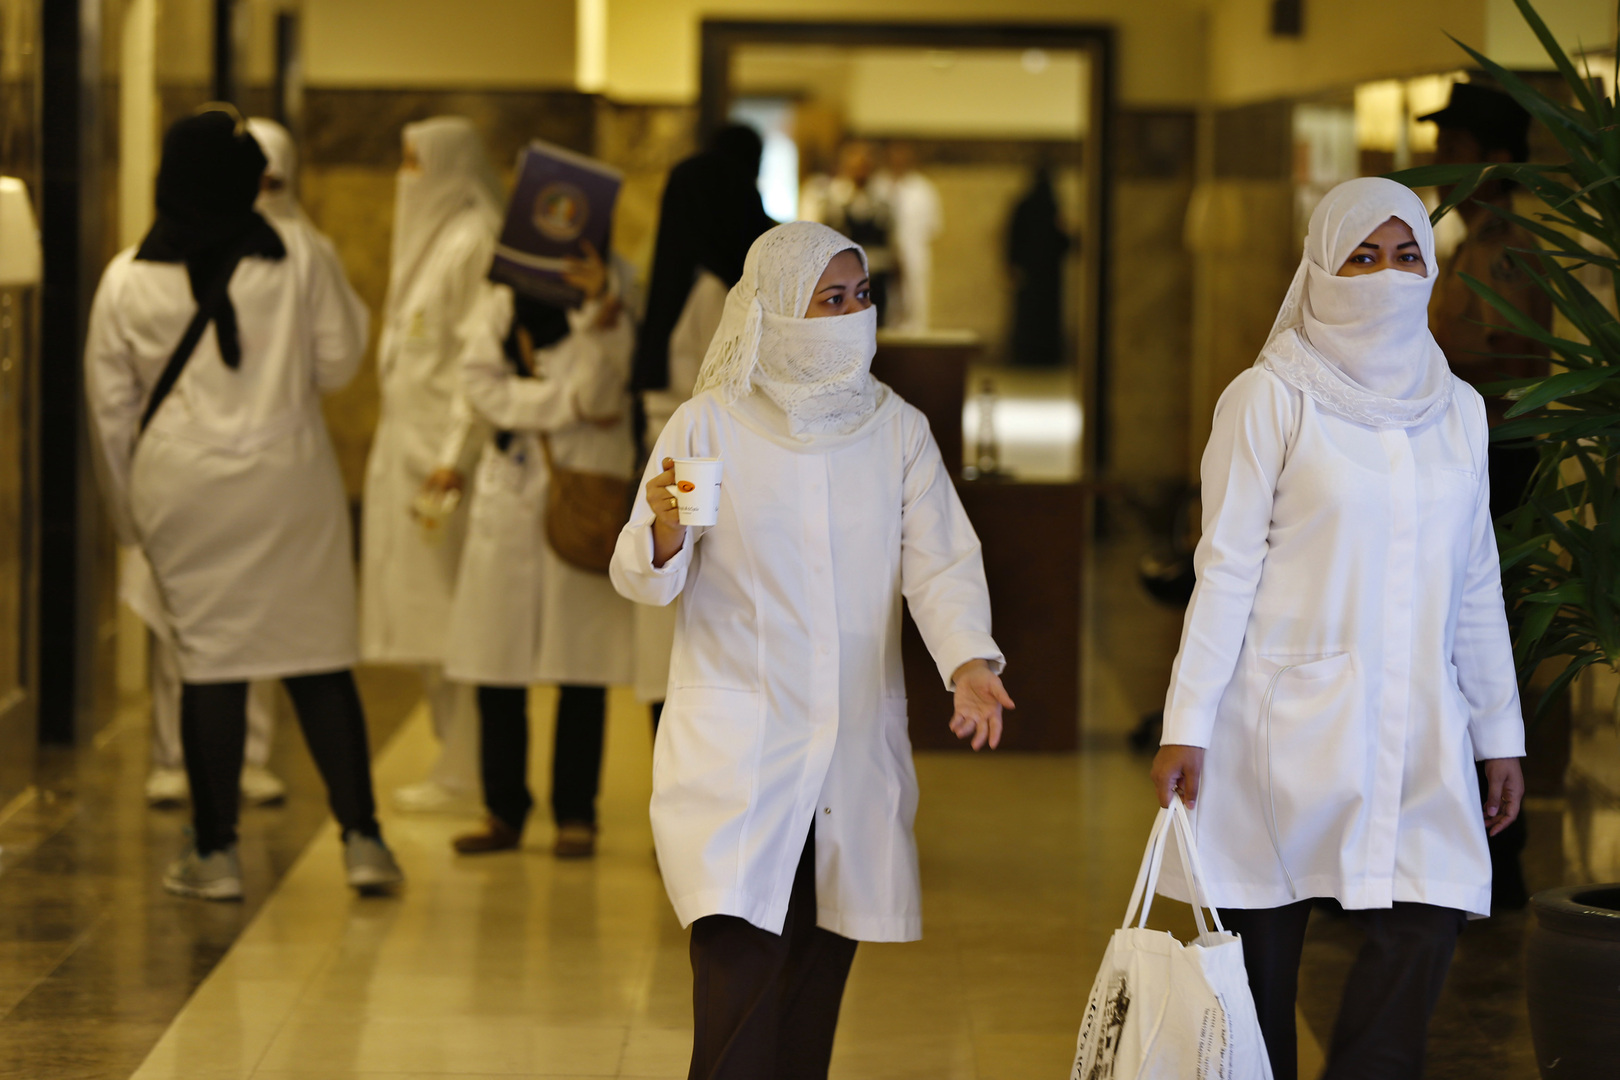 السعودية: عدد جرعات اللقاح ضد كورونا المقدمة في المملكة بلغ 4.1 مليون